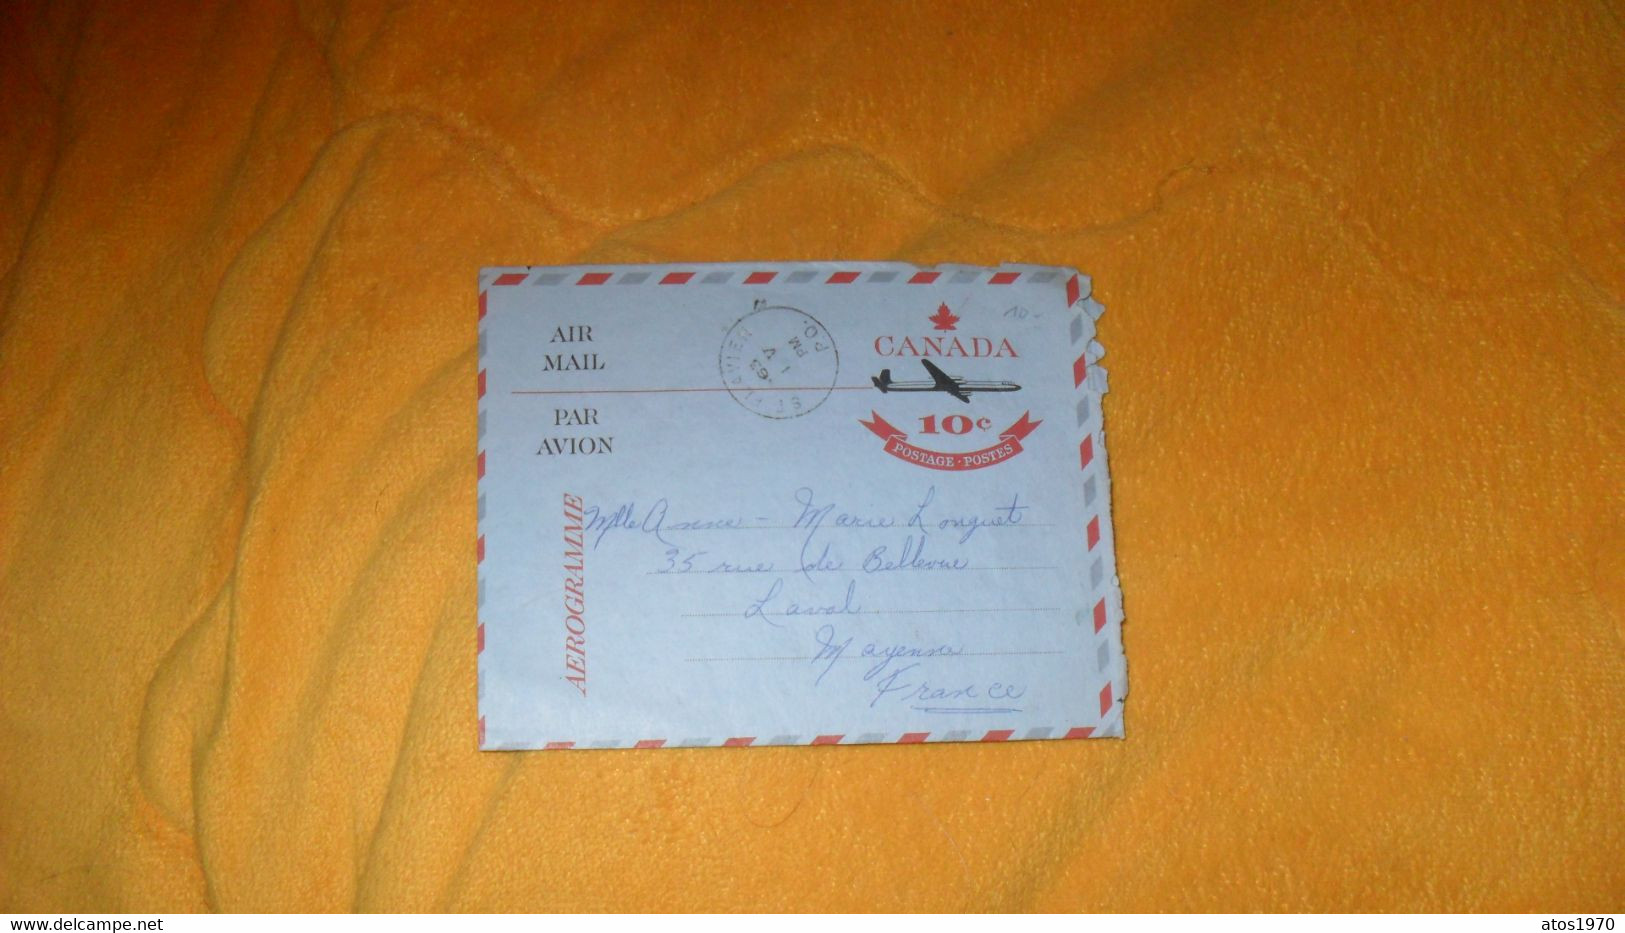 LETTRE ANCIENNE AEROGRAMME DE 1963../ CANADA 10C POSTAGE POSTES..CACHET ST FLAVIEN CANADA POUR LAVAL FRANCE - Covers & Documents